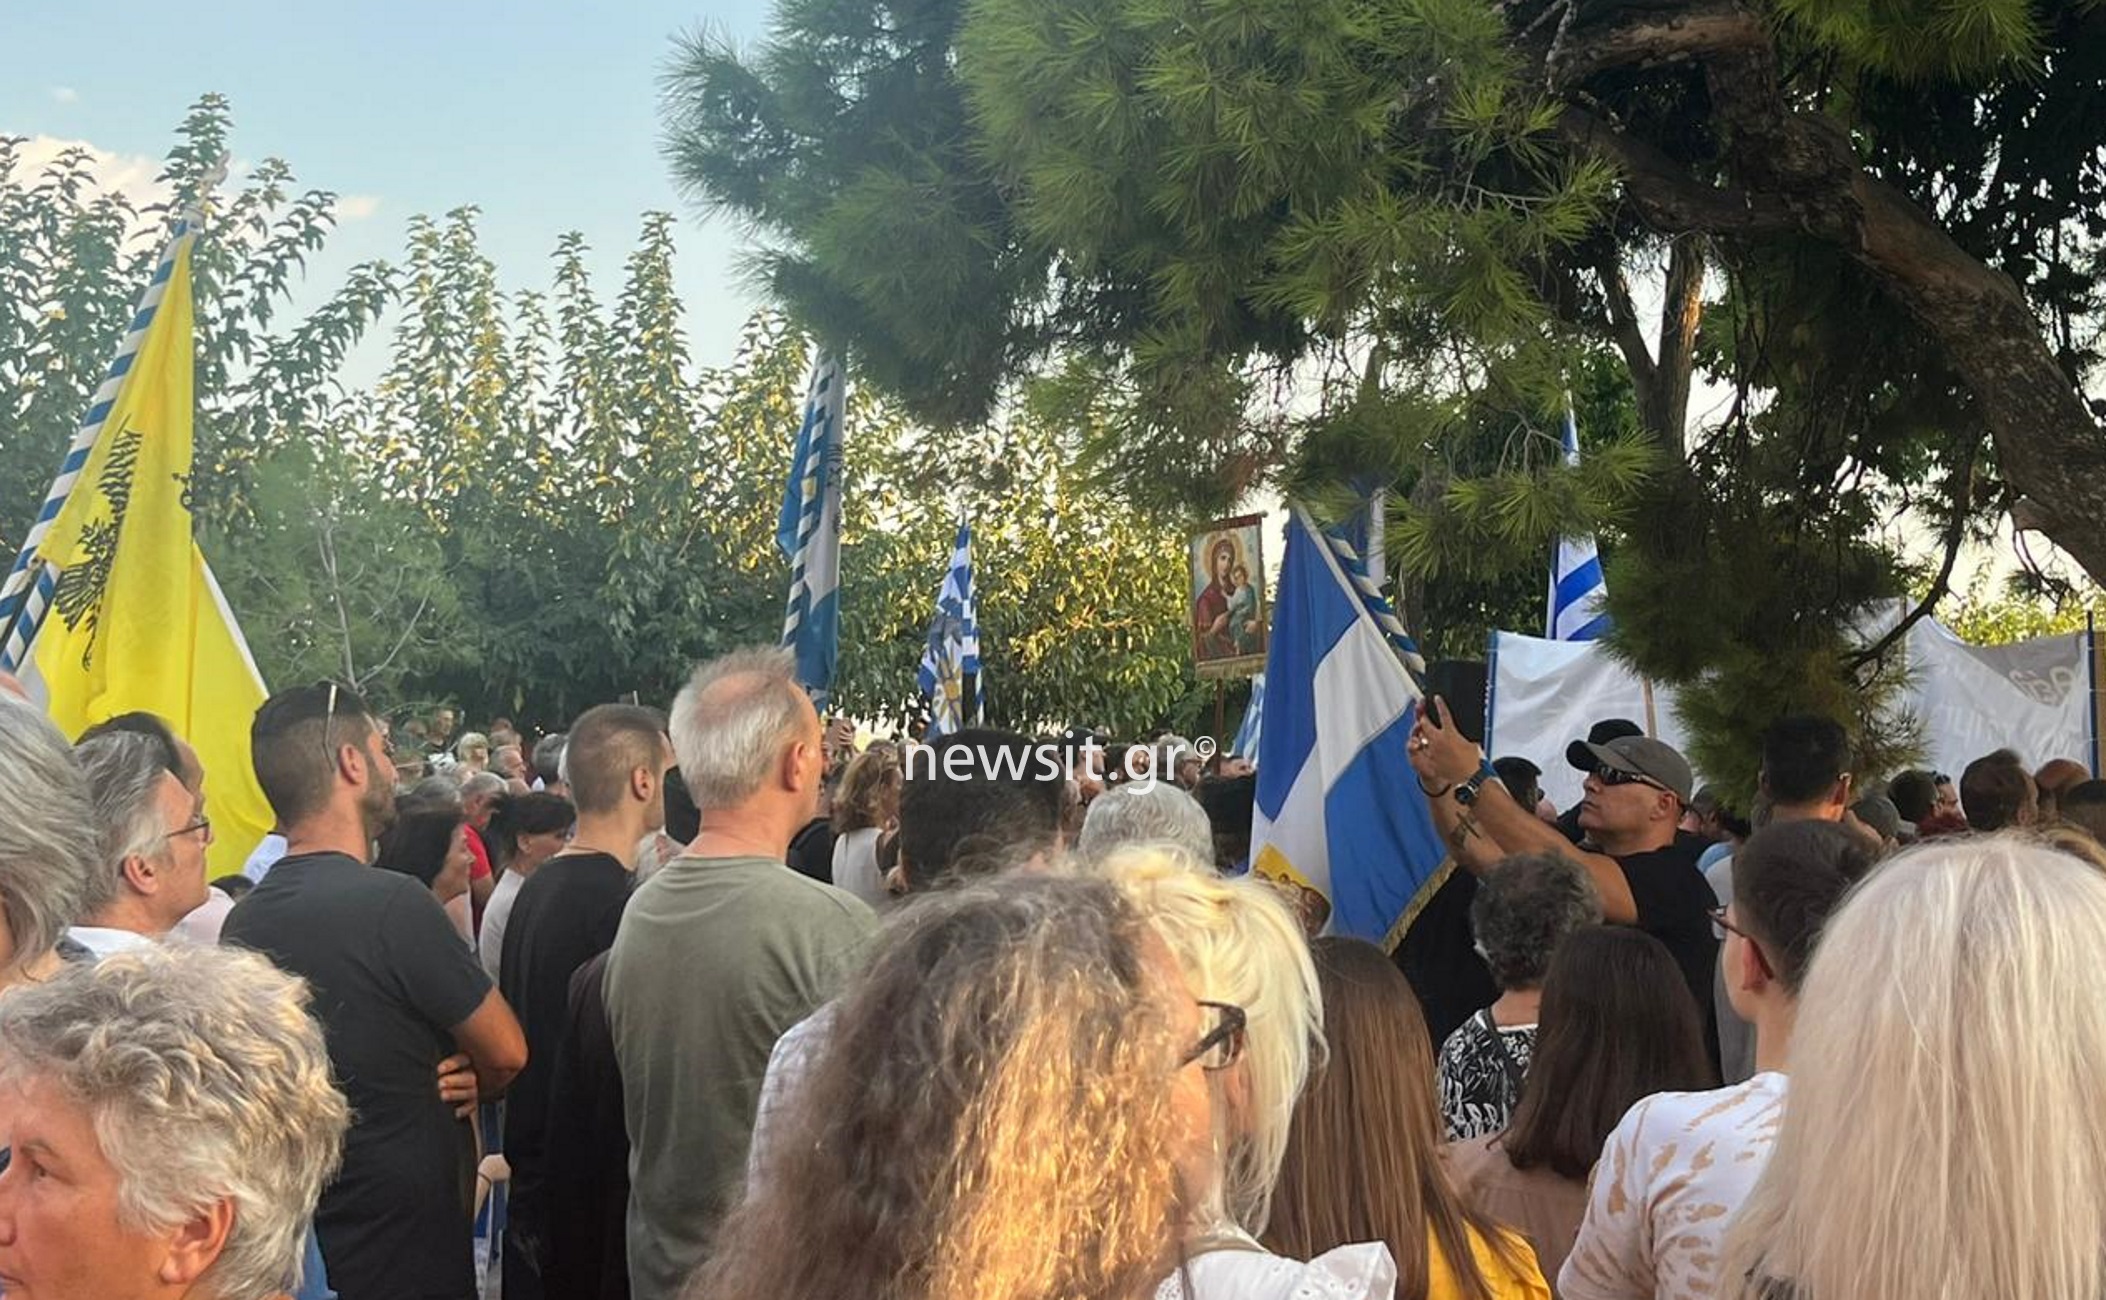 Θεσσαλονίκη: Συλλαλητήριο για τις νέες ταυτότητες – Η προσευχή των αρνητών